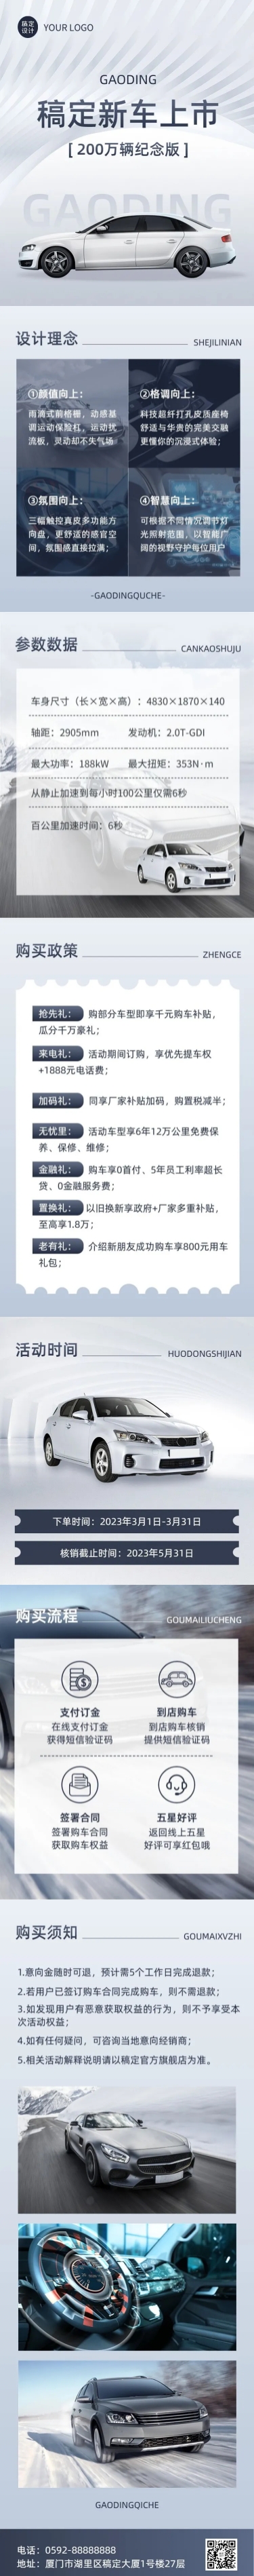 企业汽车销售新车上市营销海报详情页预览效果